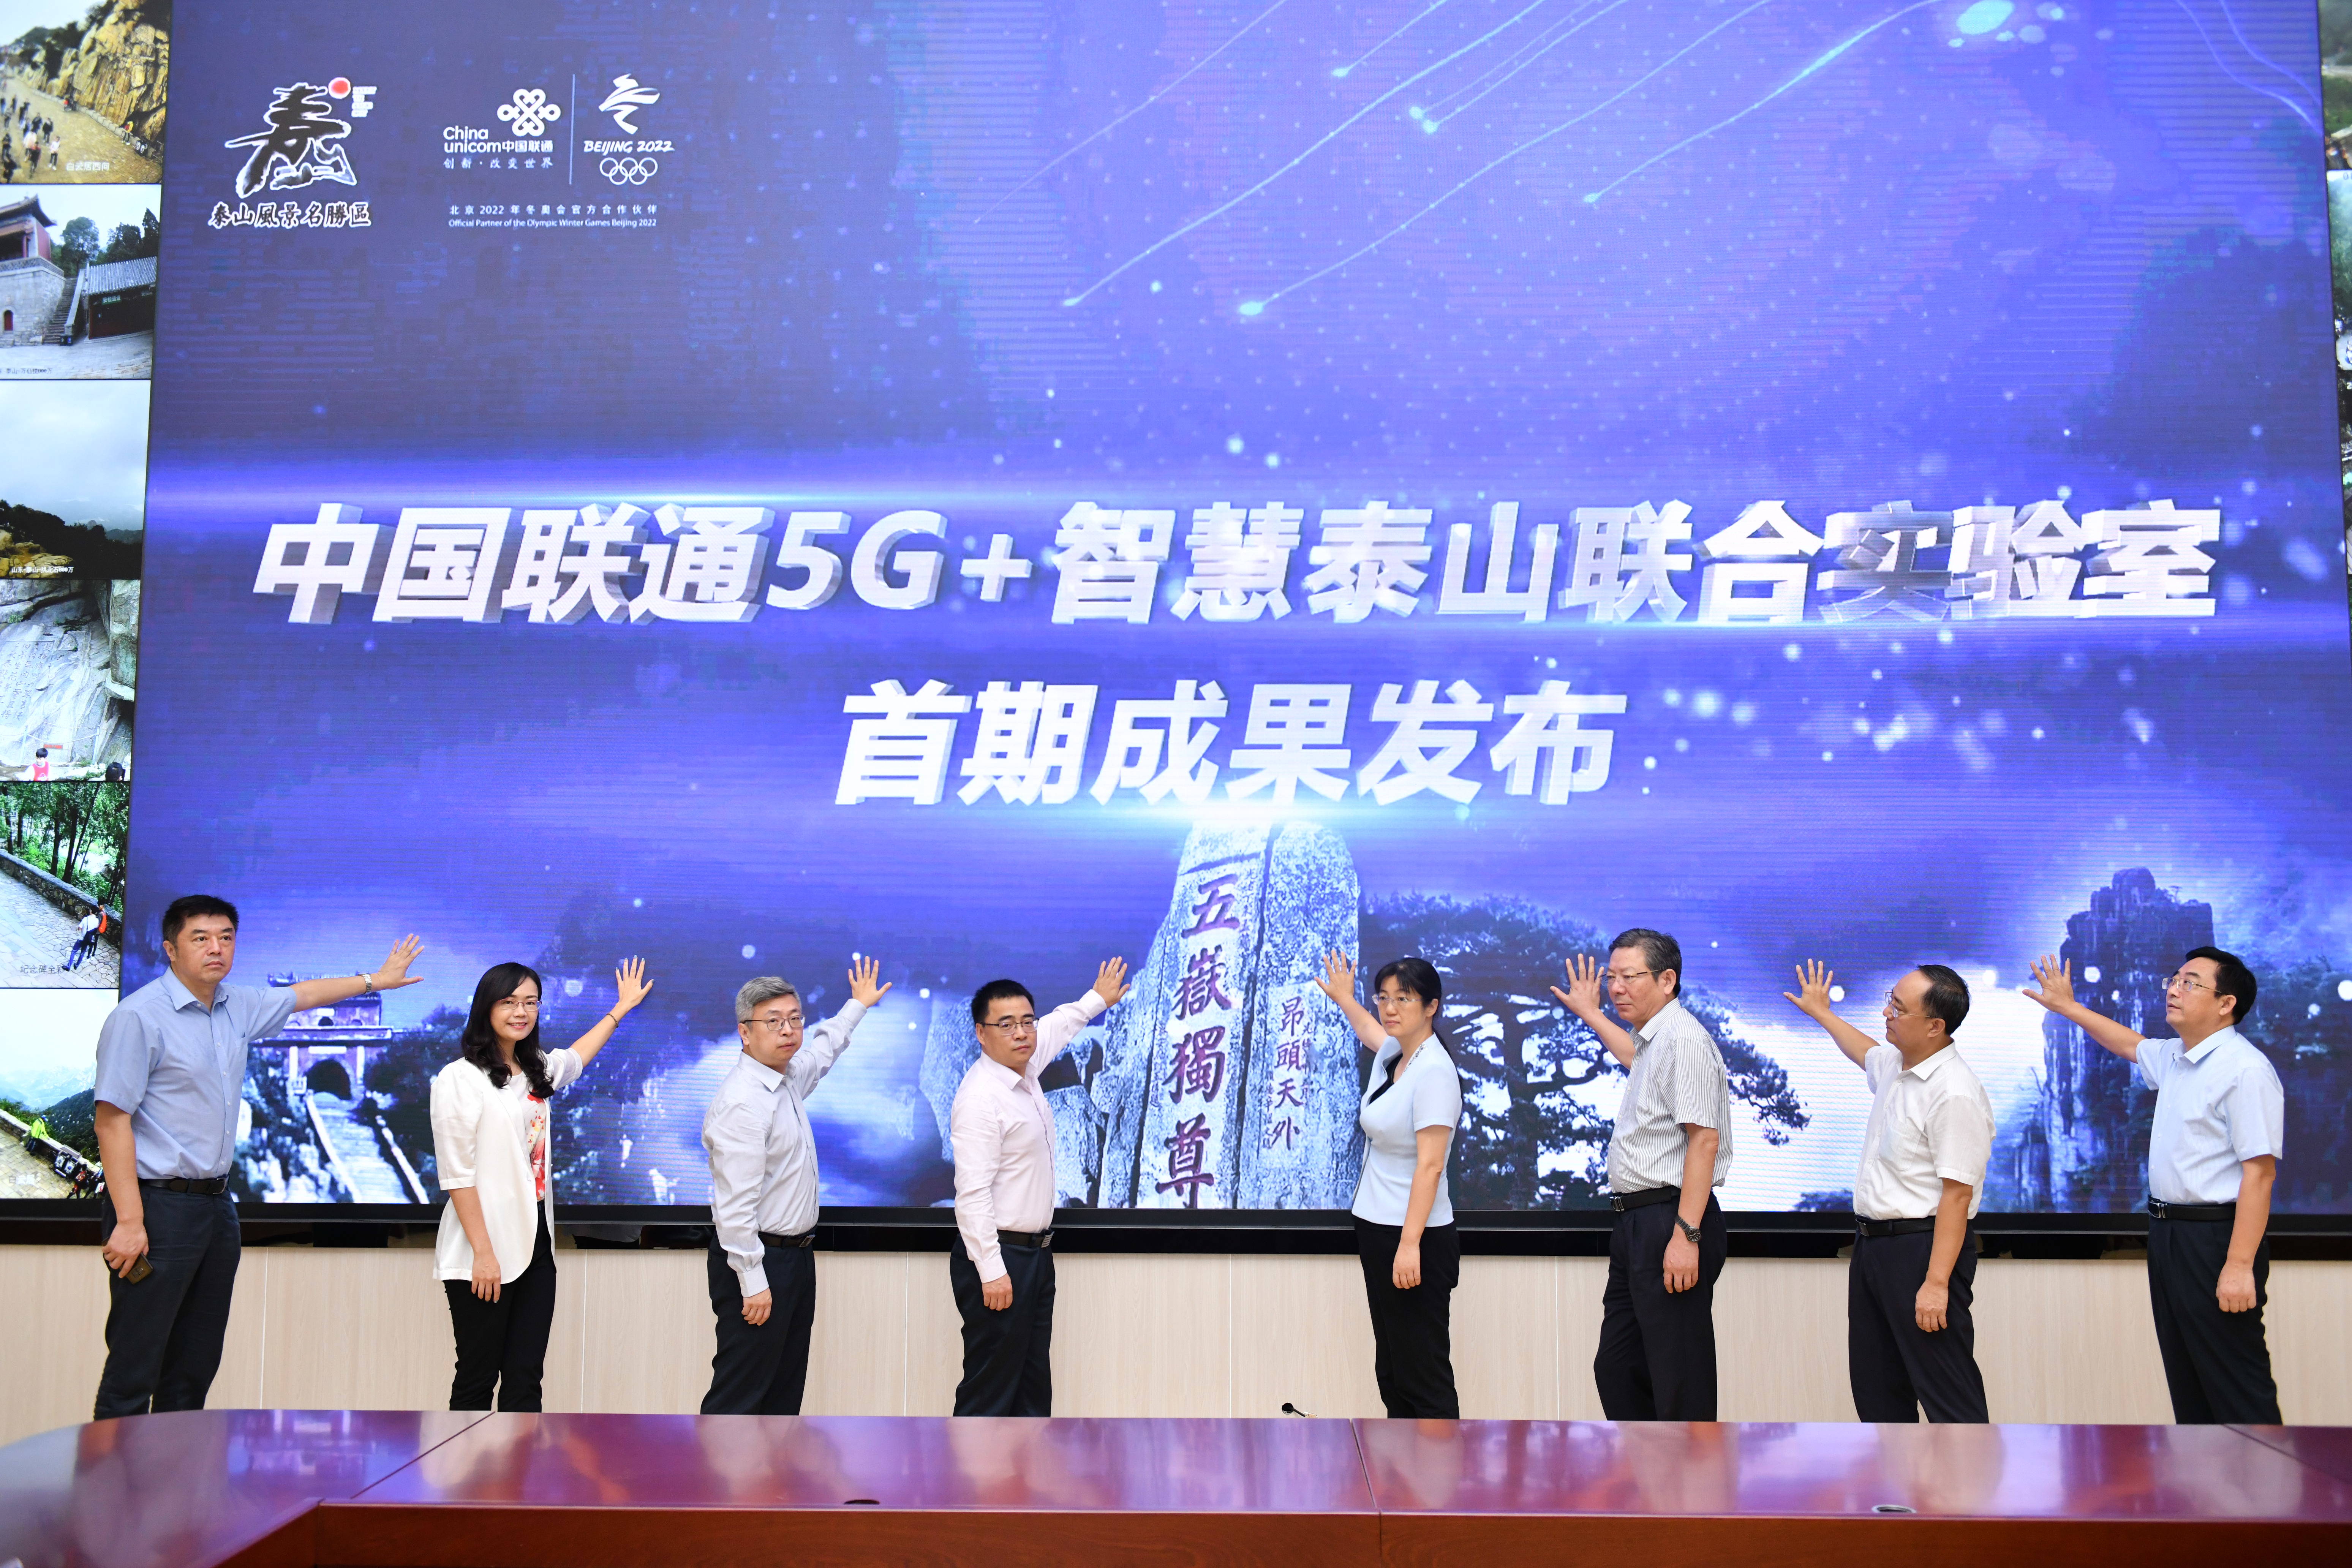 中国联通携手泰山景区打造5G智慧景区创新示范基地并发布首期成果